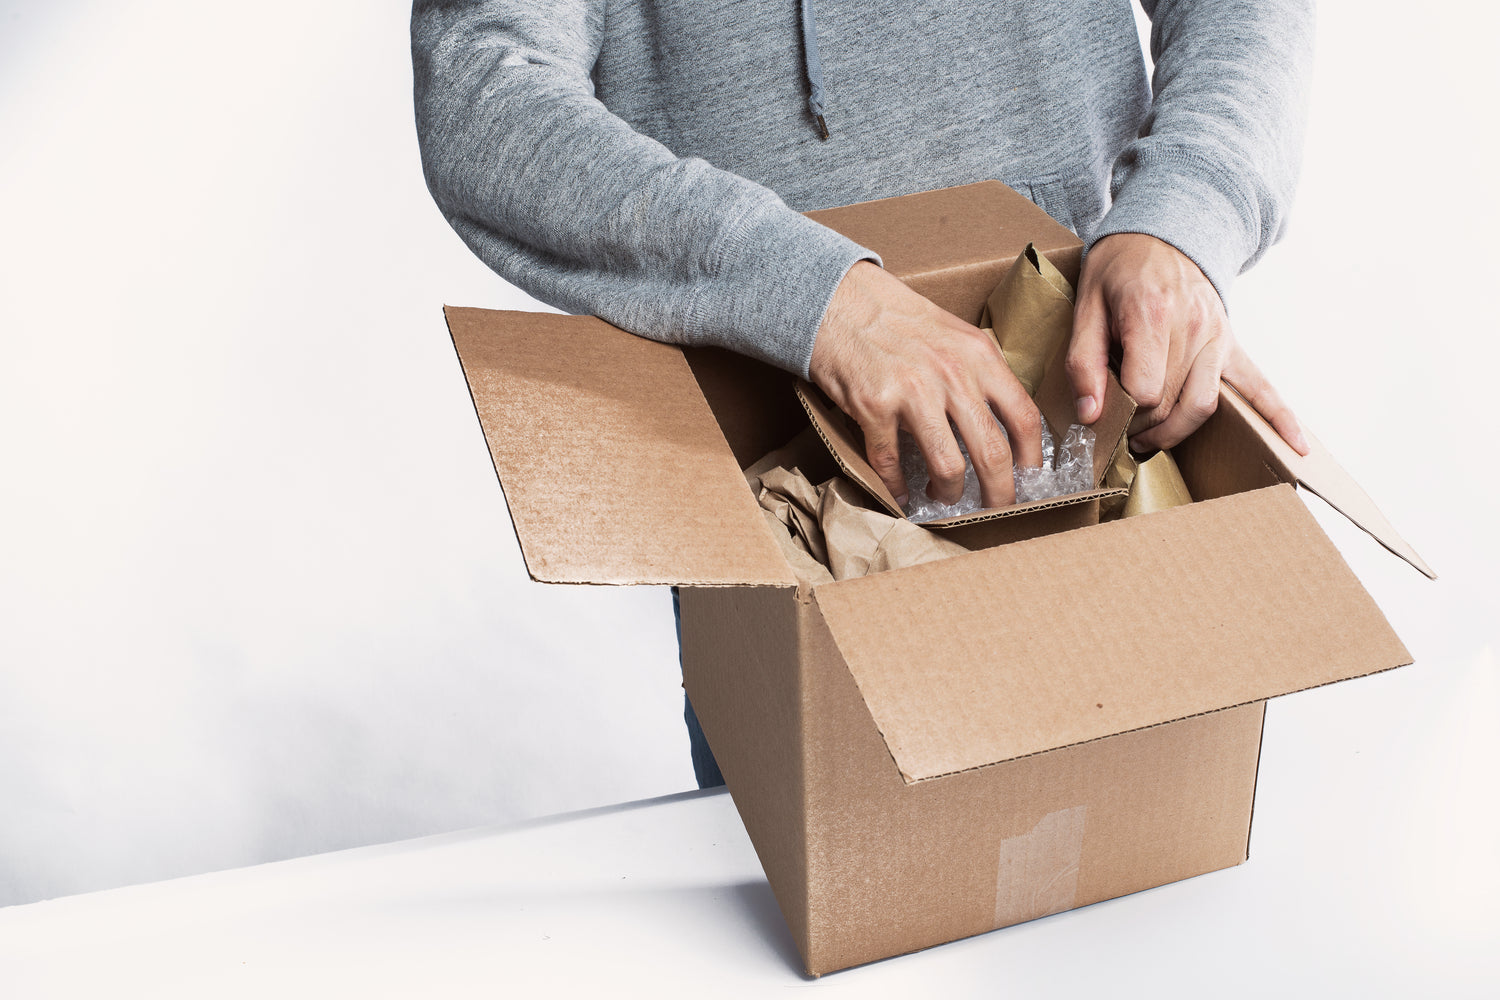 Bild: Man sieht einen Mann, welcher gerade ein braunes Paket öffnet, dies soll auf Versand hinweisen.